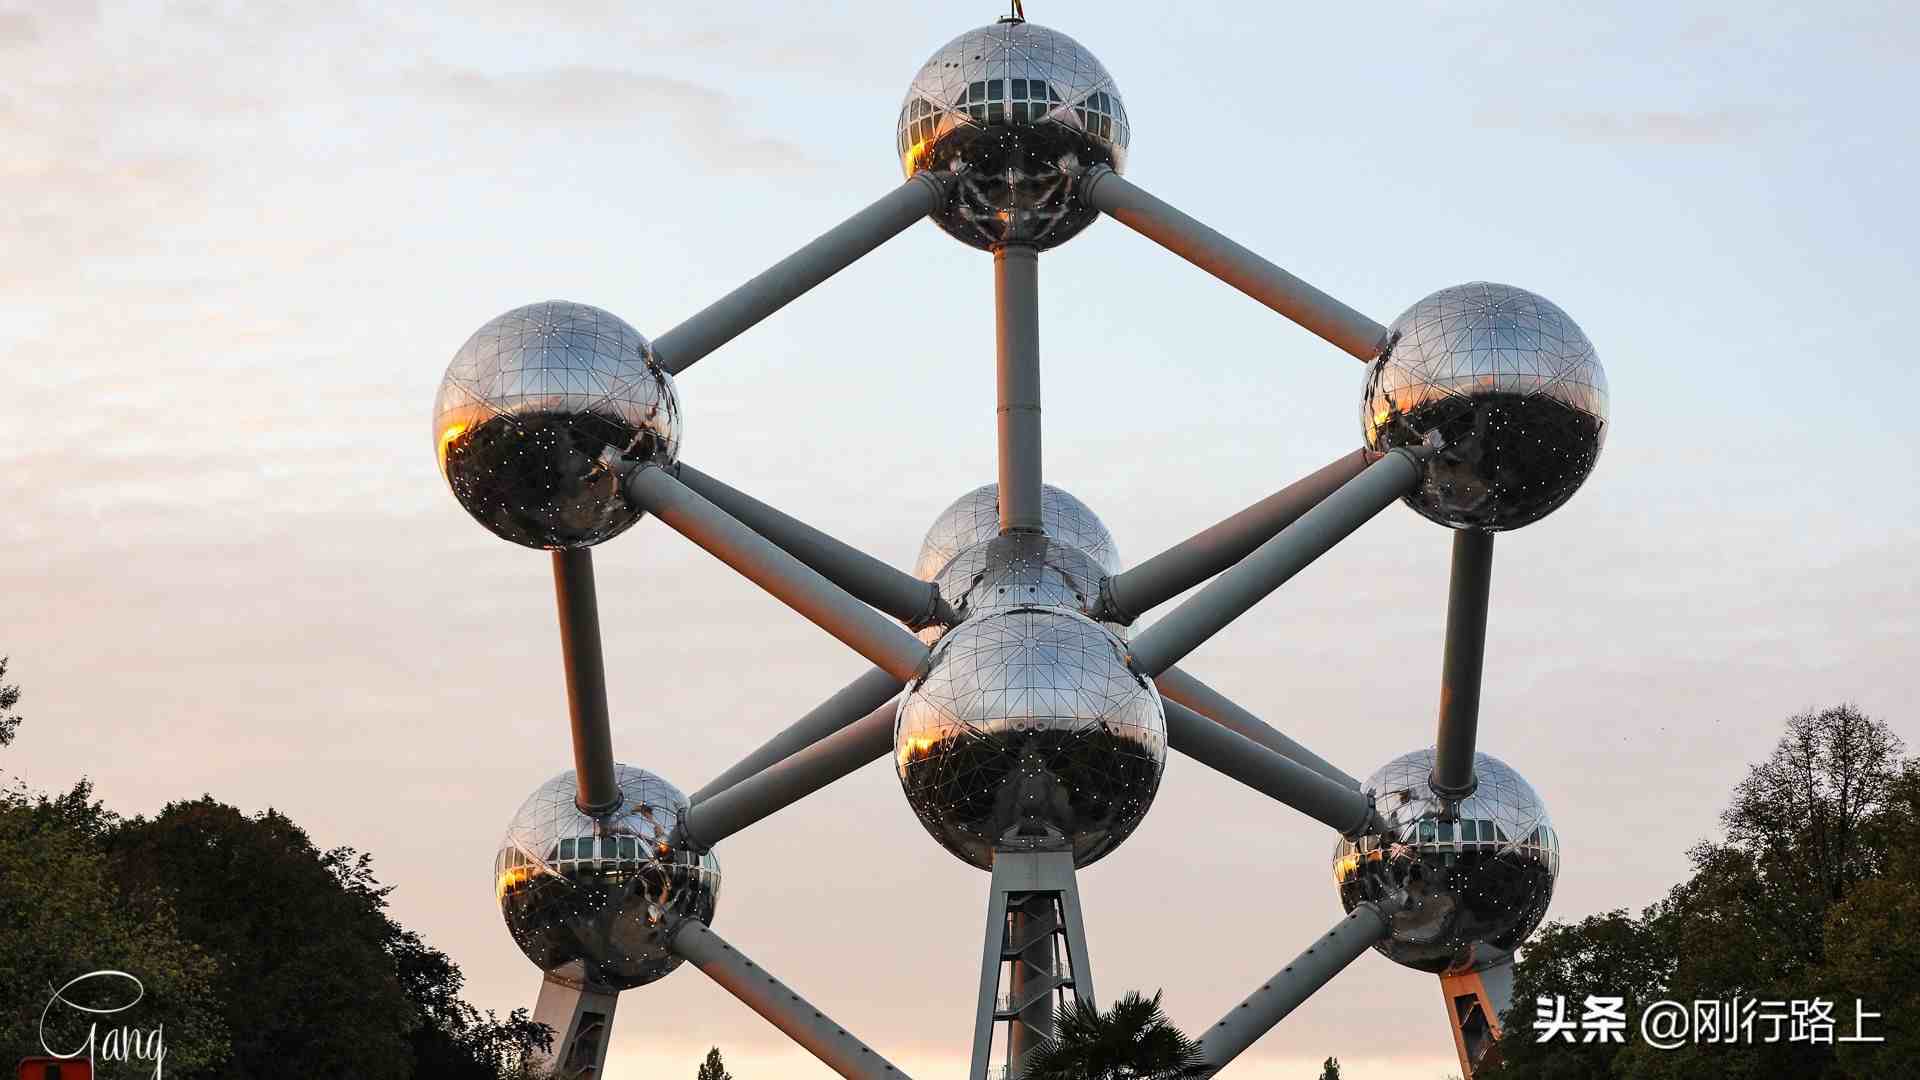 人称“比利时的埃菲尔”，这个原子塔是欧洲最奇特的建筑